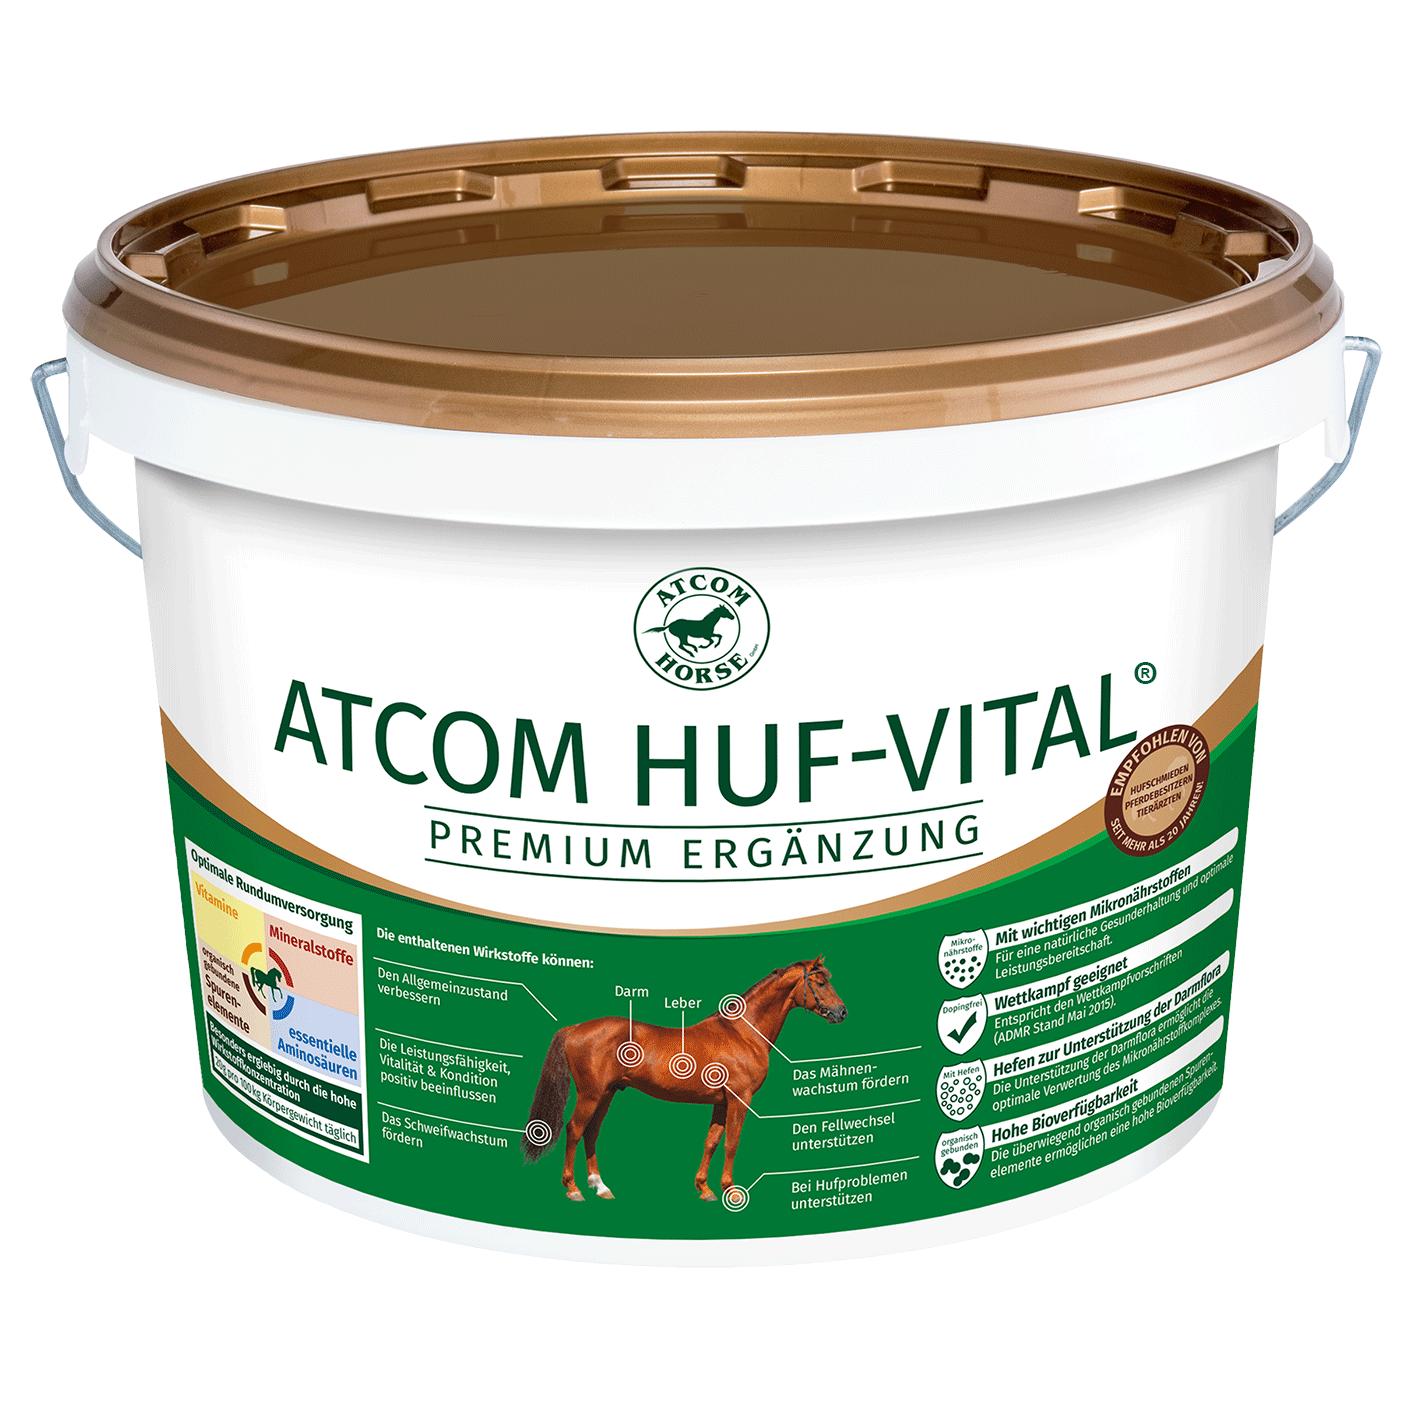 Atcom HUF-VITAL - 5 Kilogramm